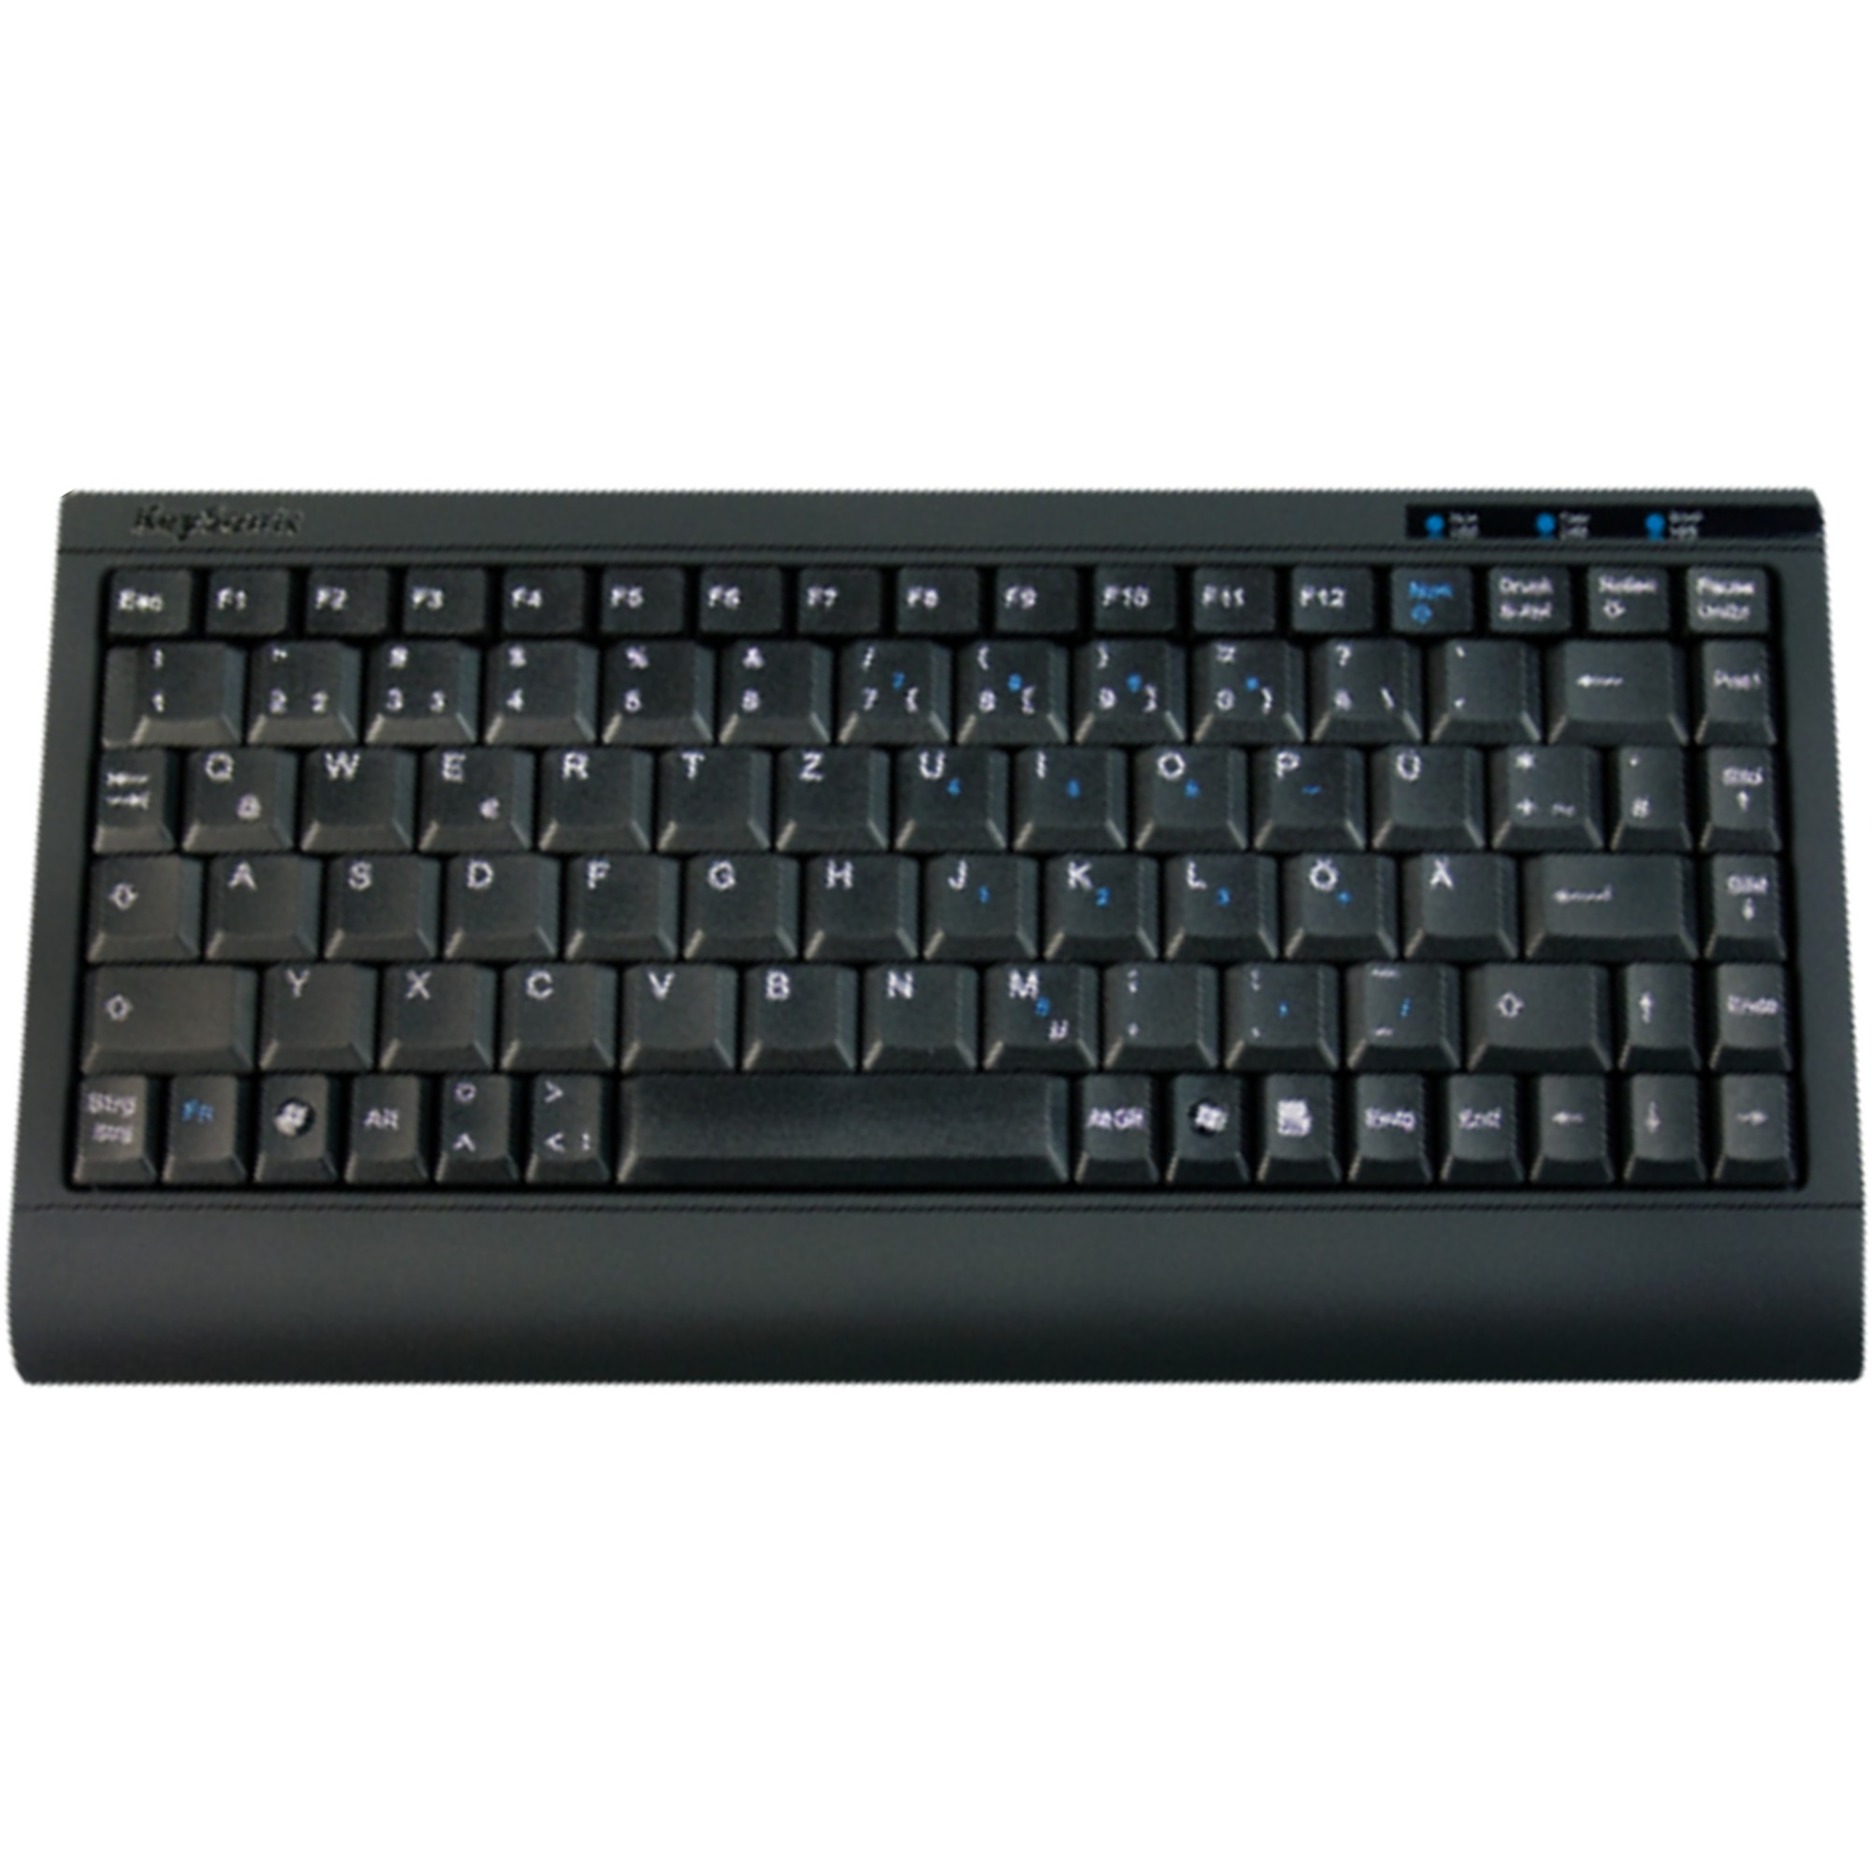 ACK-595 C+, Tastatur von Keysonic